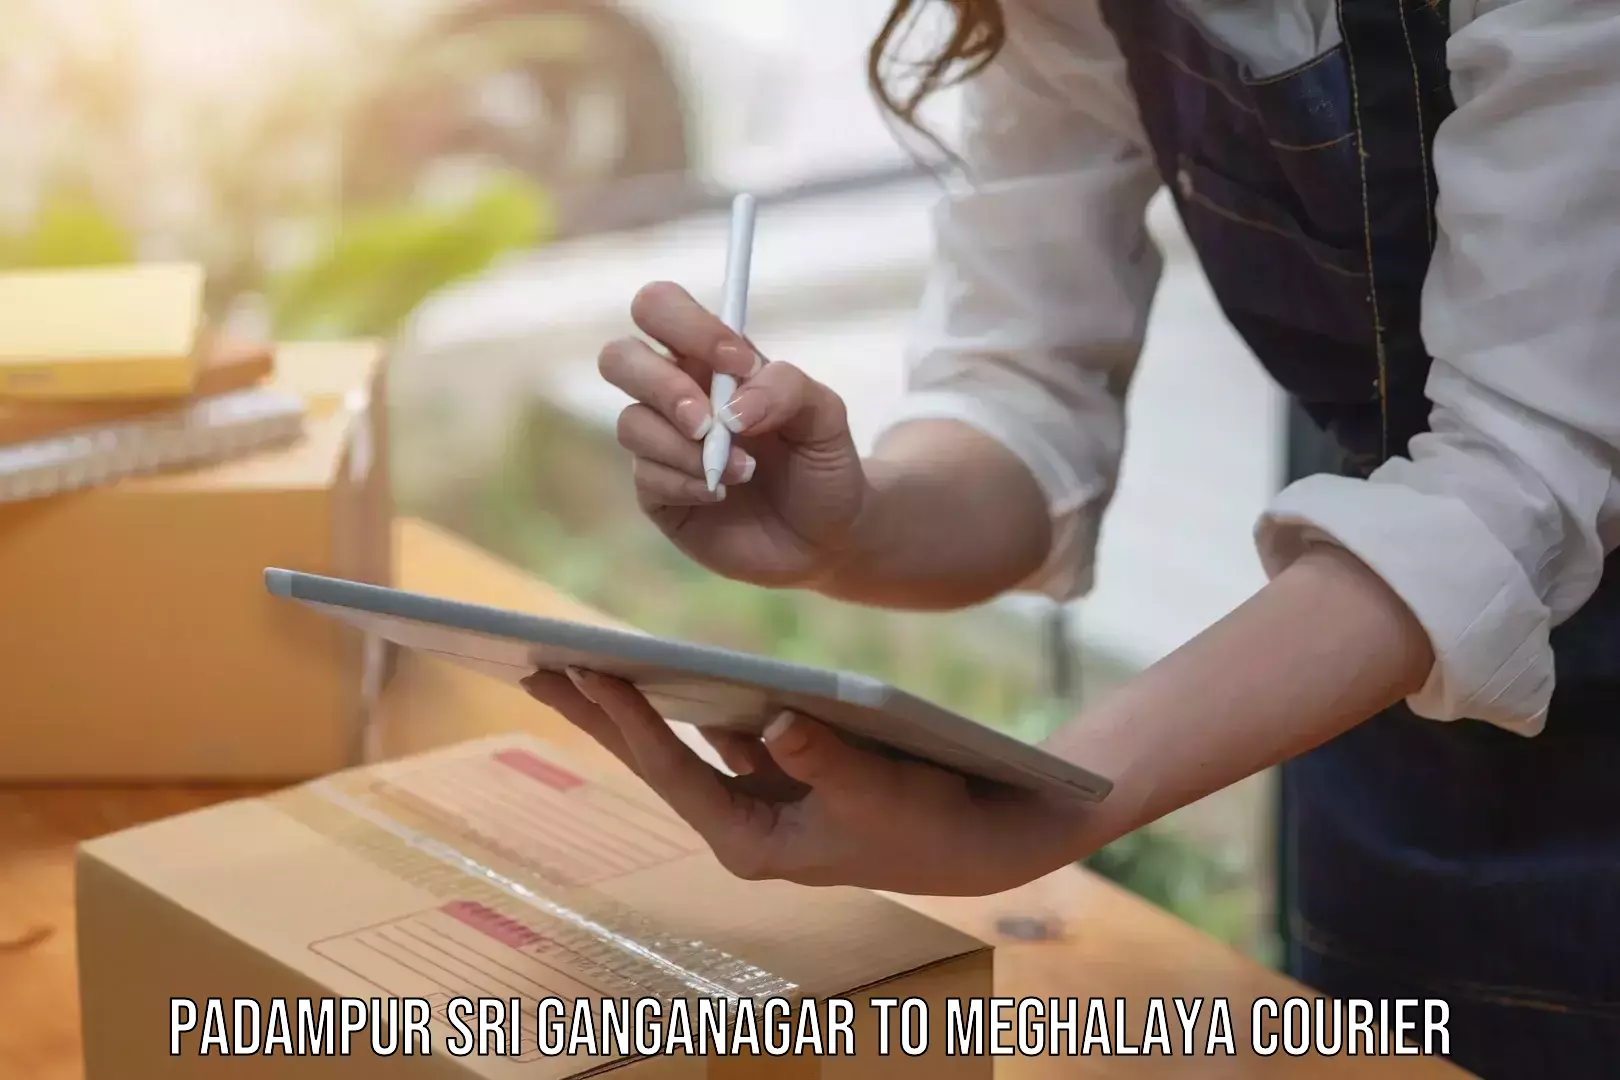 Urgent courier needs Padampur Sri Ganganagar to Meghalaya